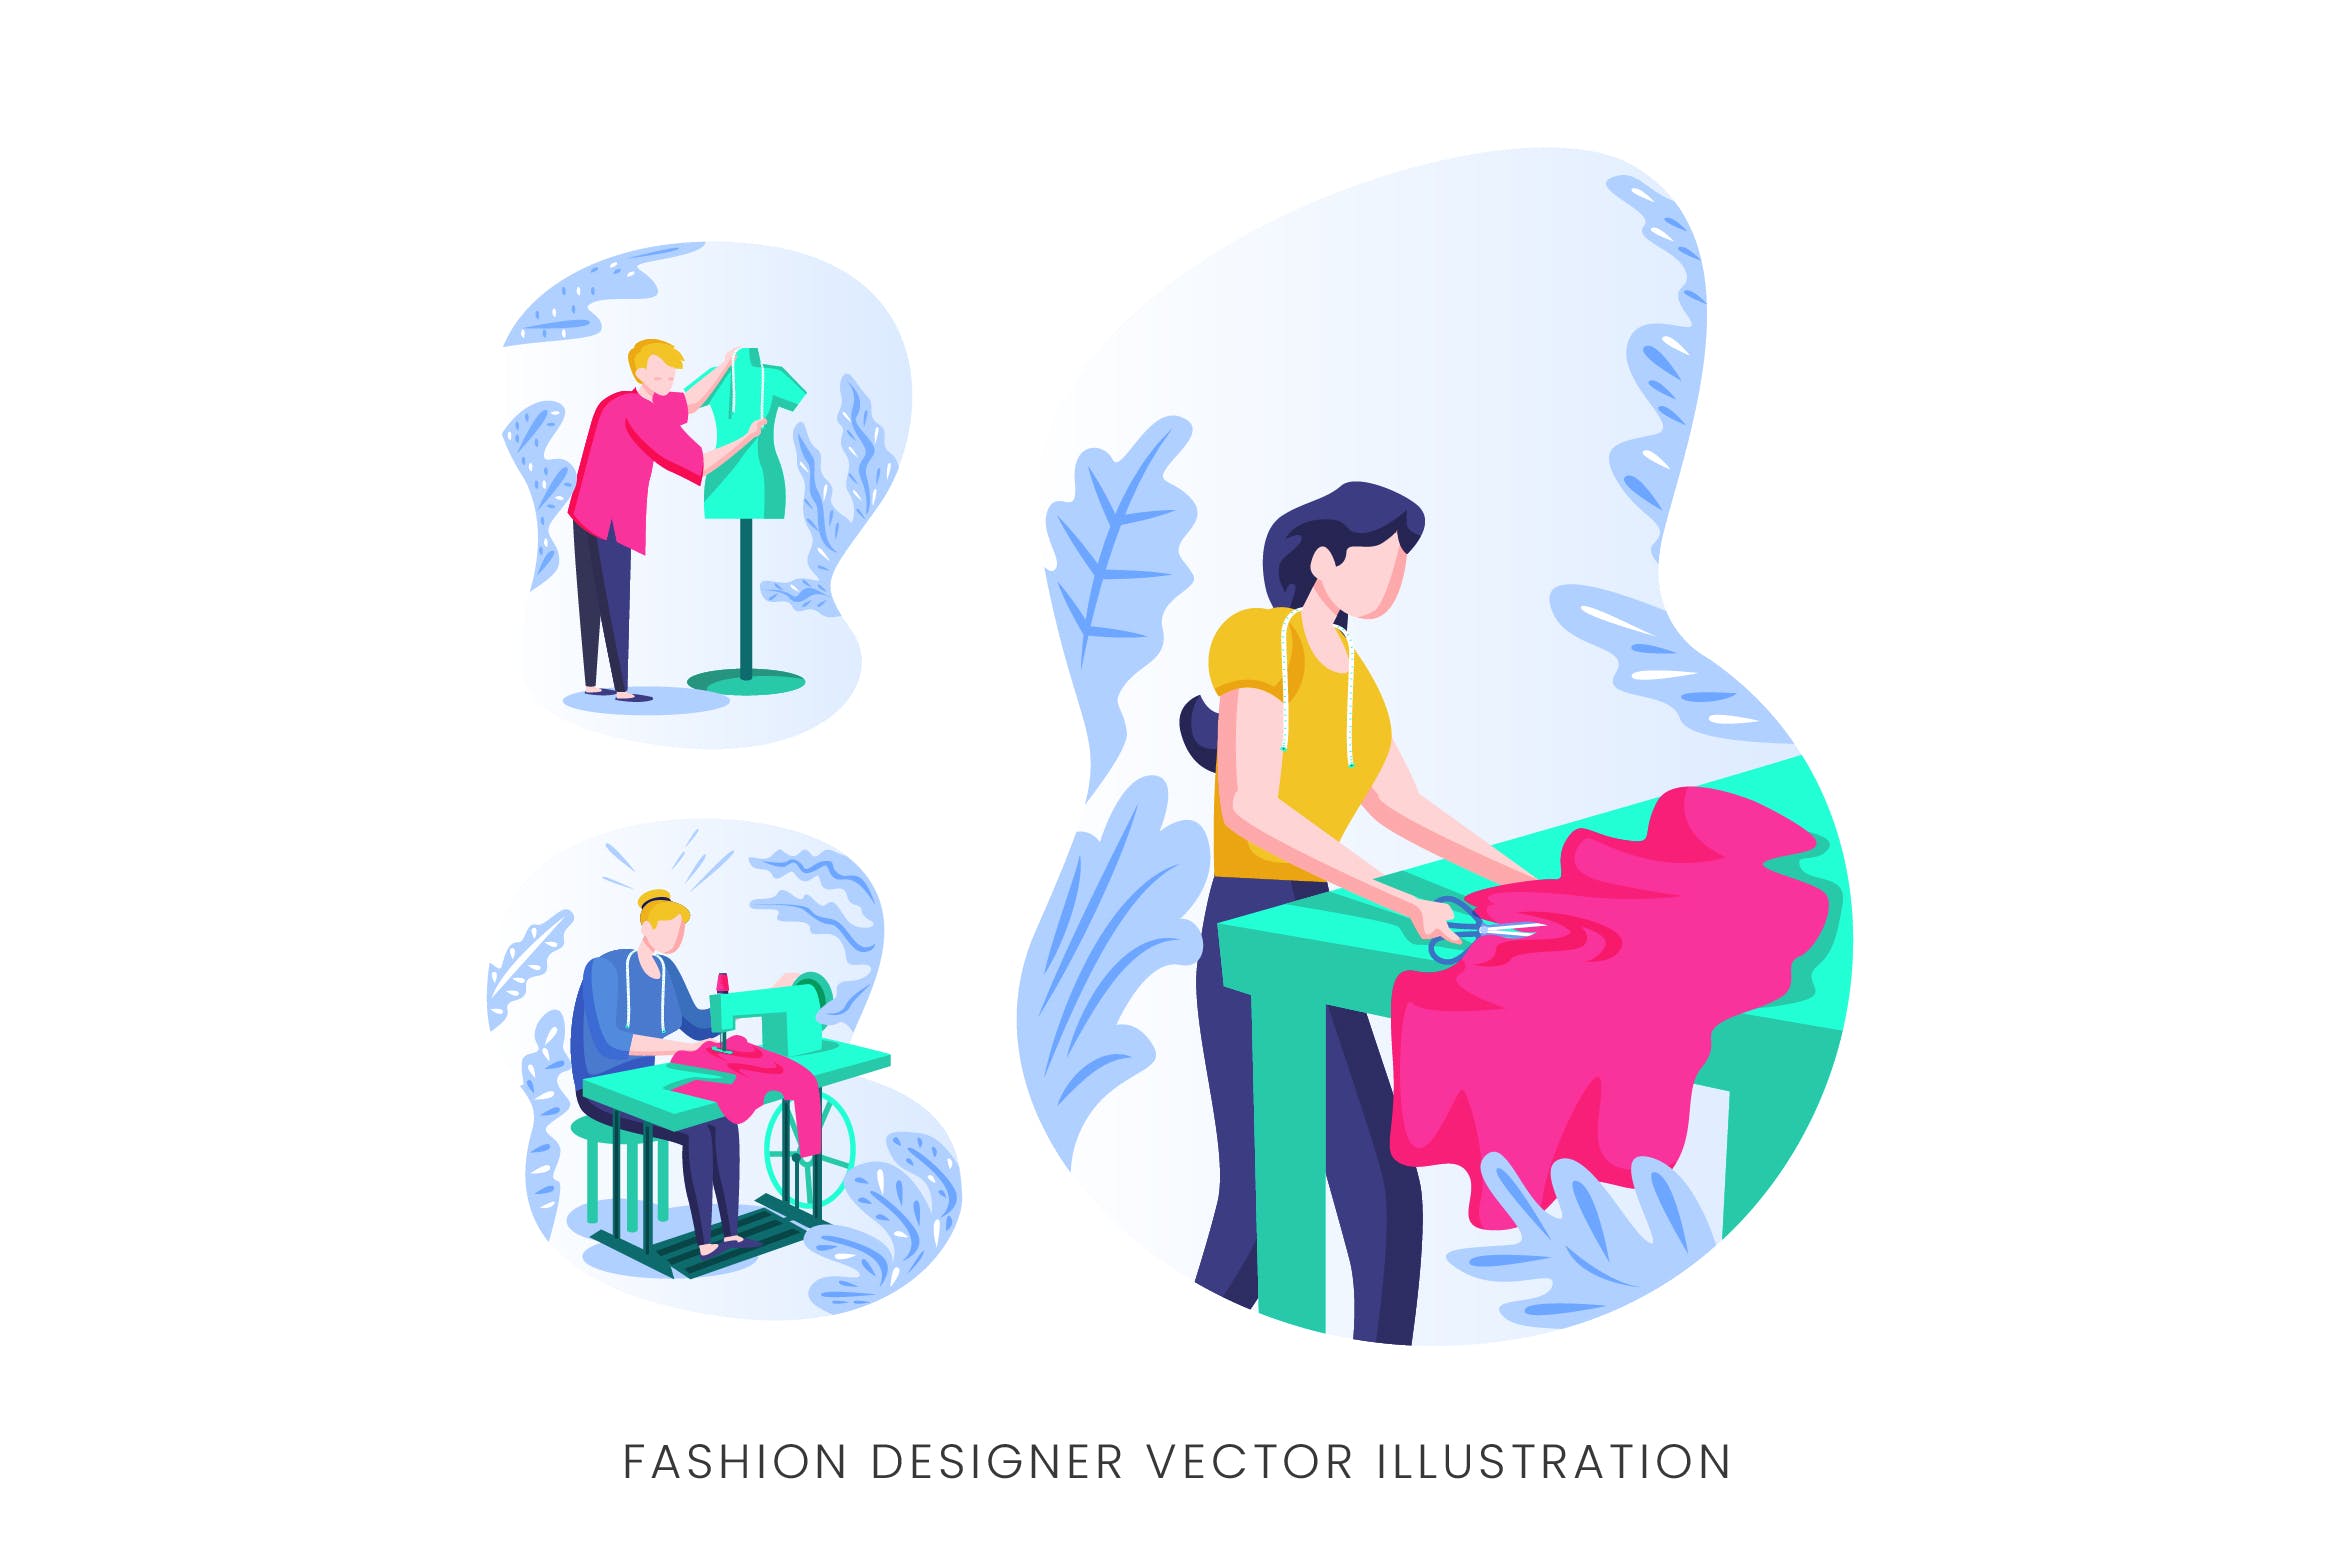 时装设计师人物形象矢量手绘手绘大洋岛精选设计素材 Fashion Designer Vector Character Set插图